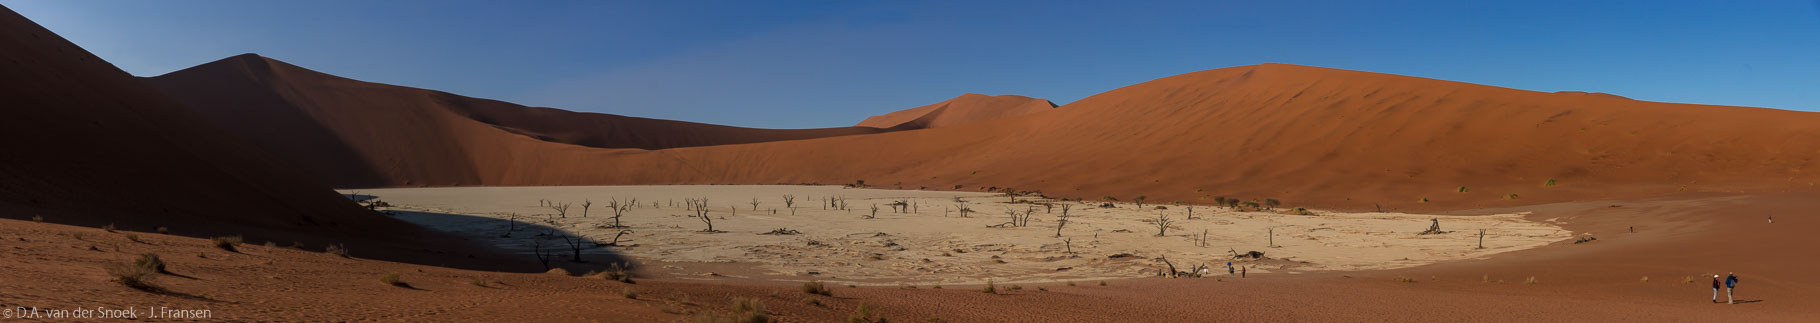 Namibië-1098-1109_v1.jpg